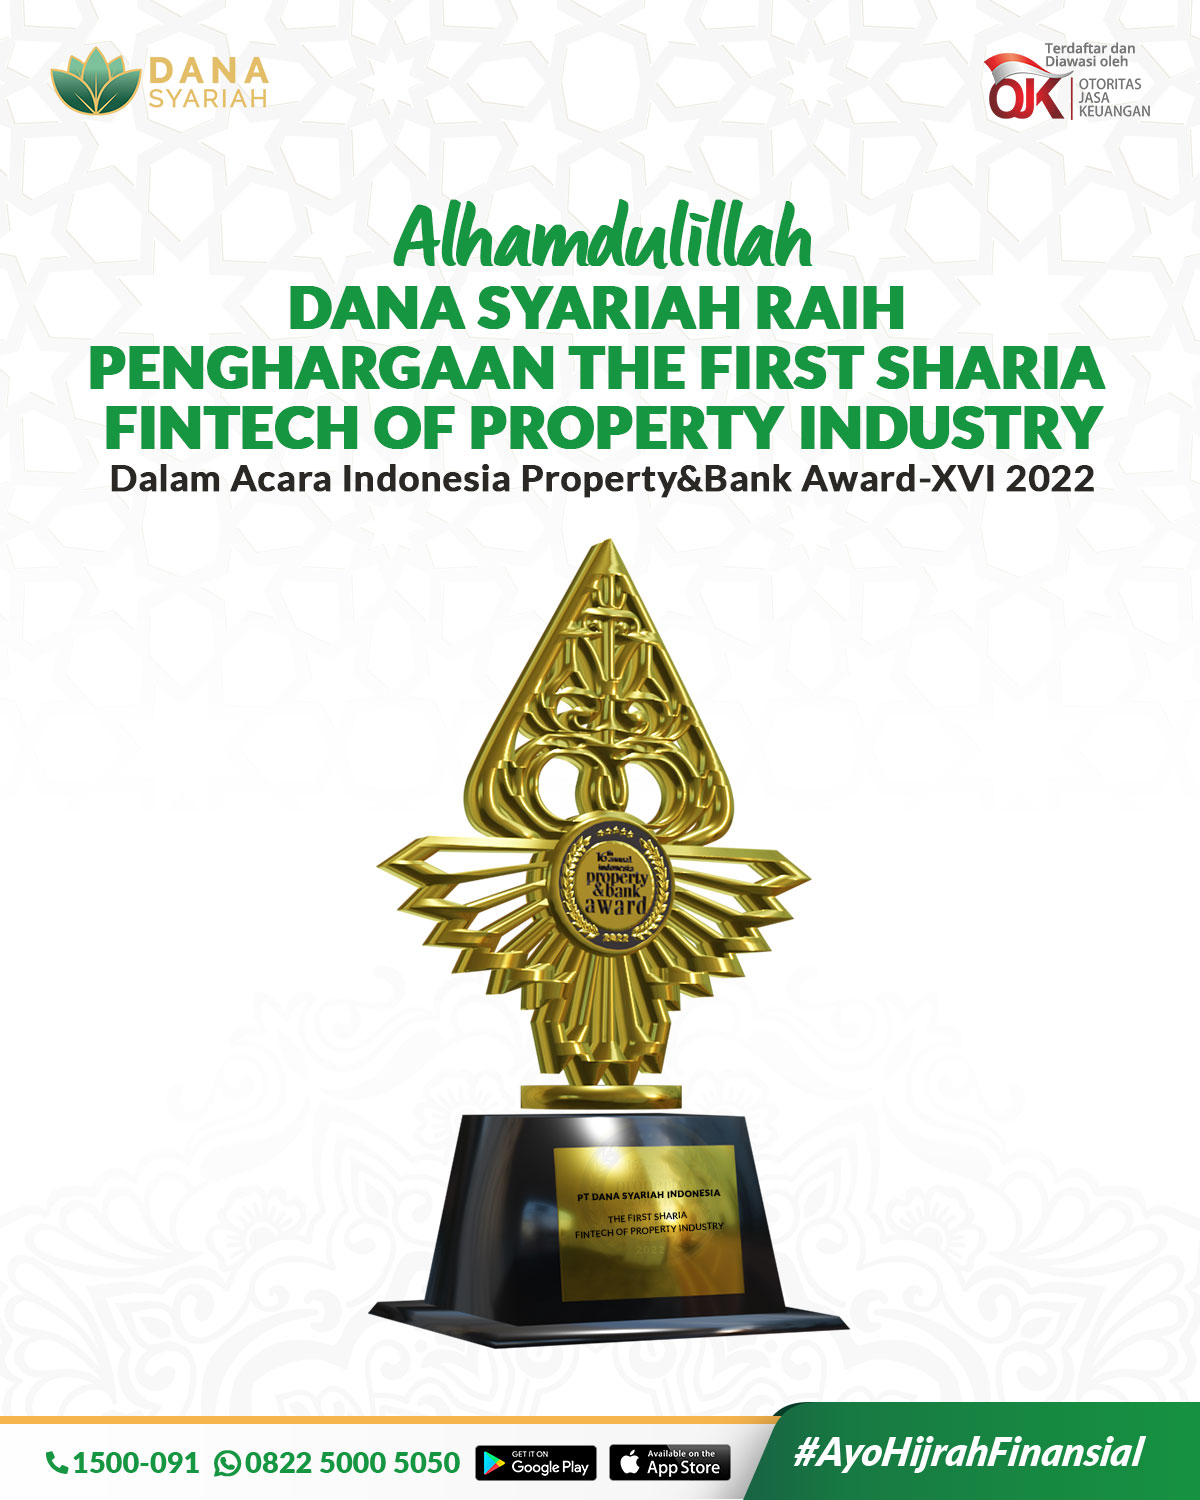 Dana Syariah Dana Syariah Raih Penghargaan Indonesia Property dan Bank Award